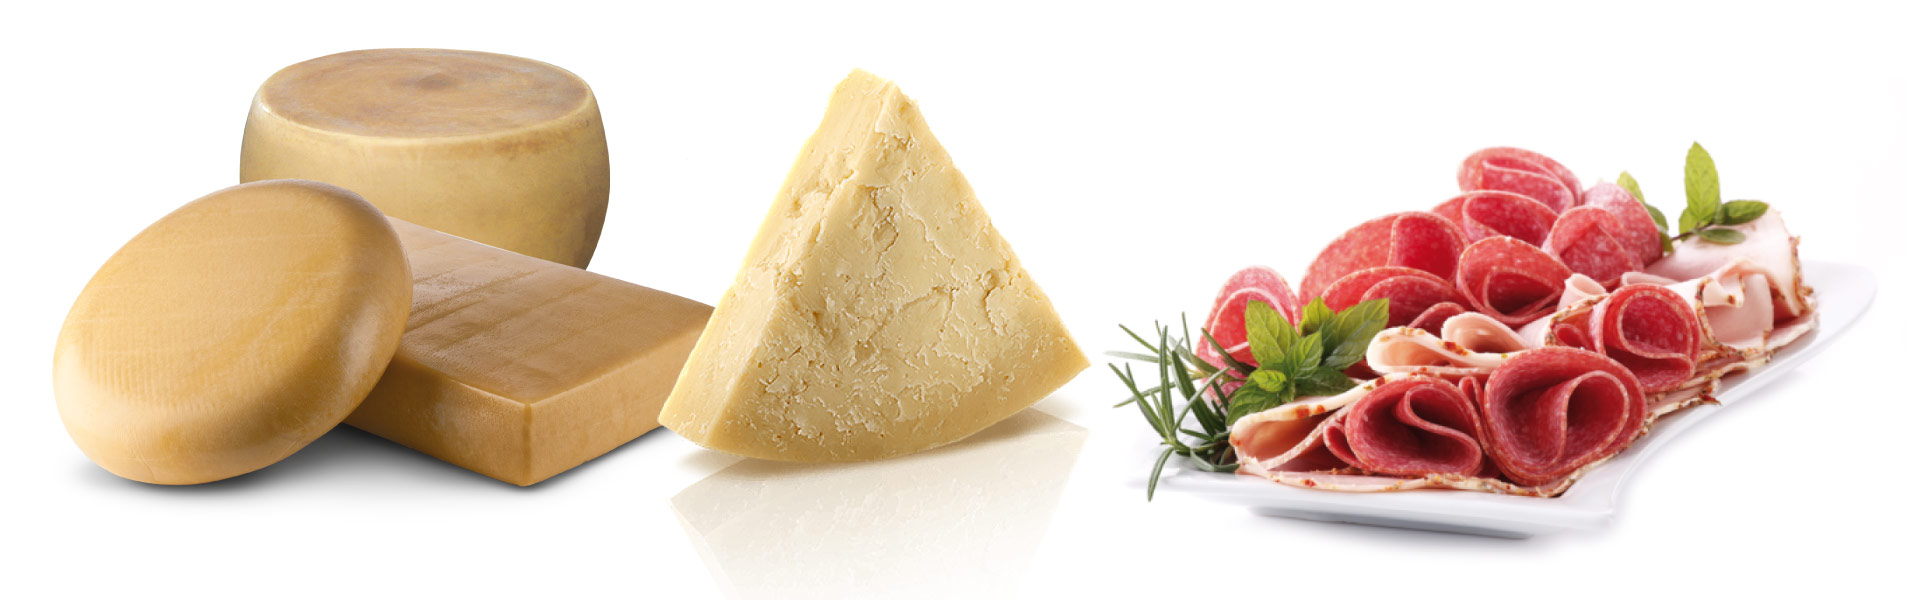 Cremonesi formaggi - Prodotti Azienda